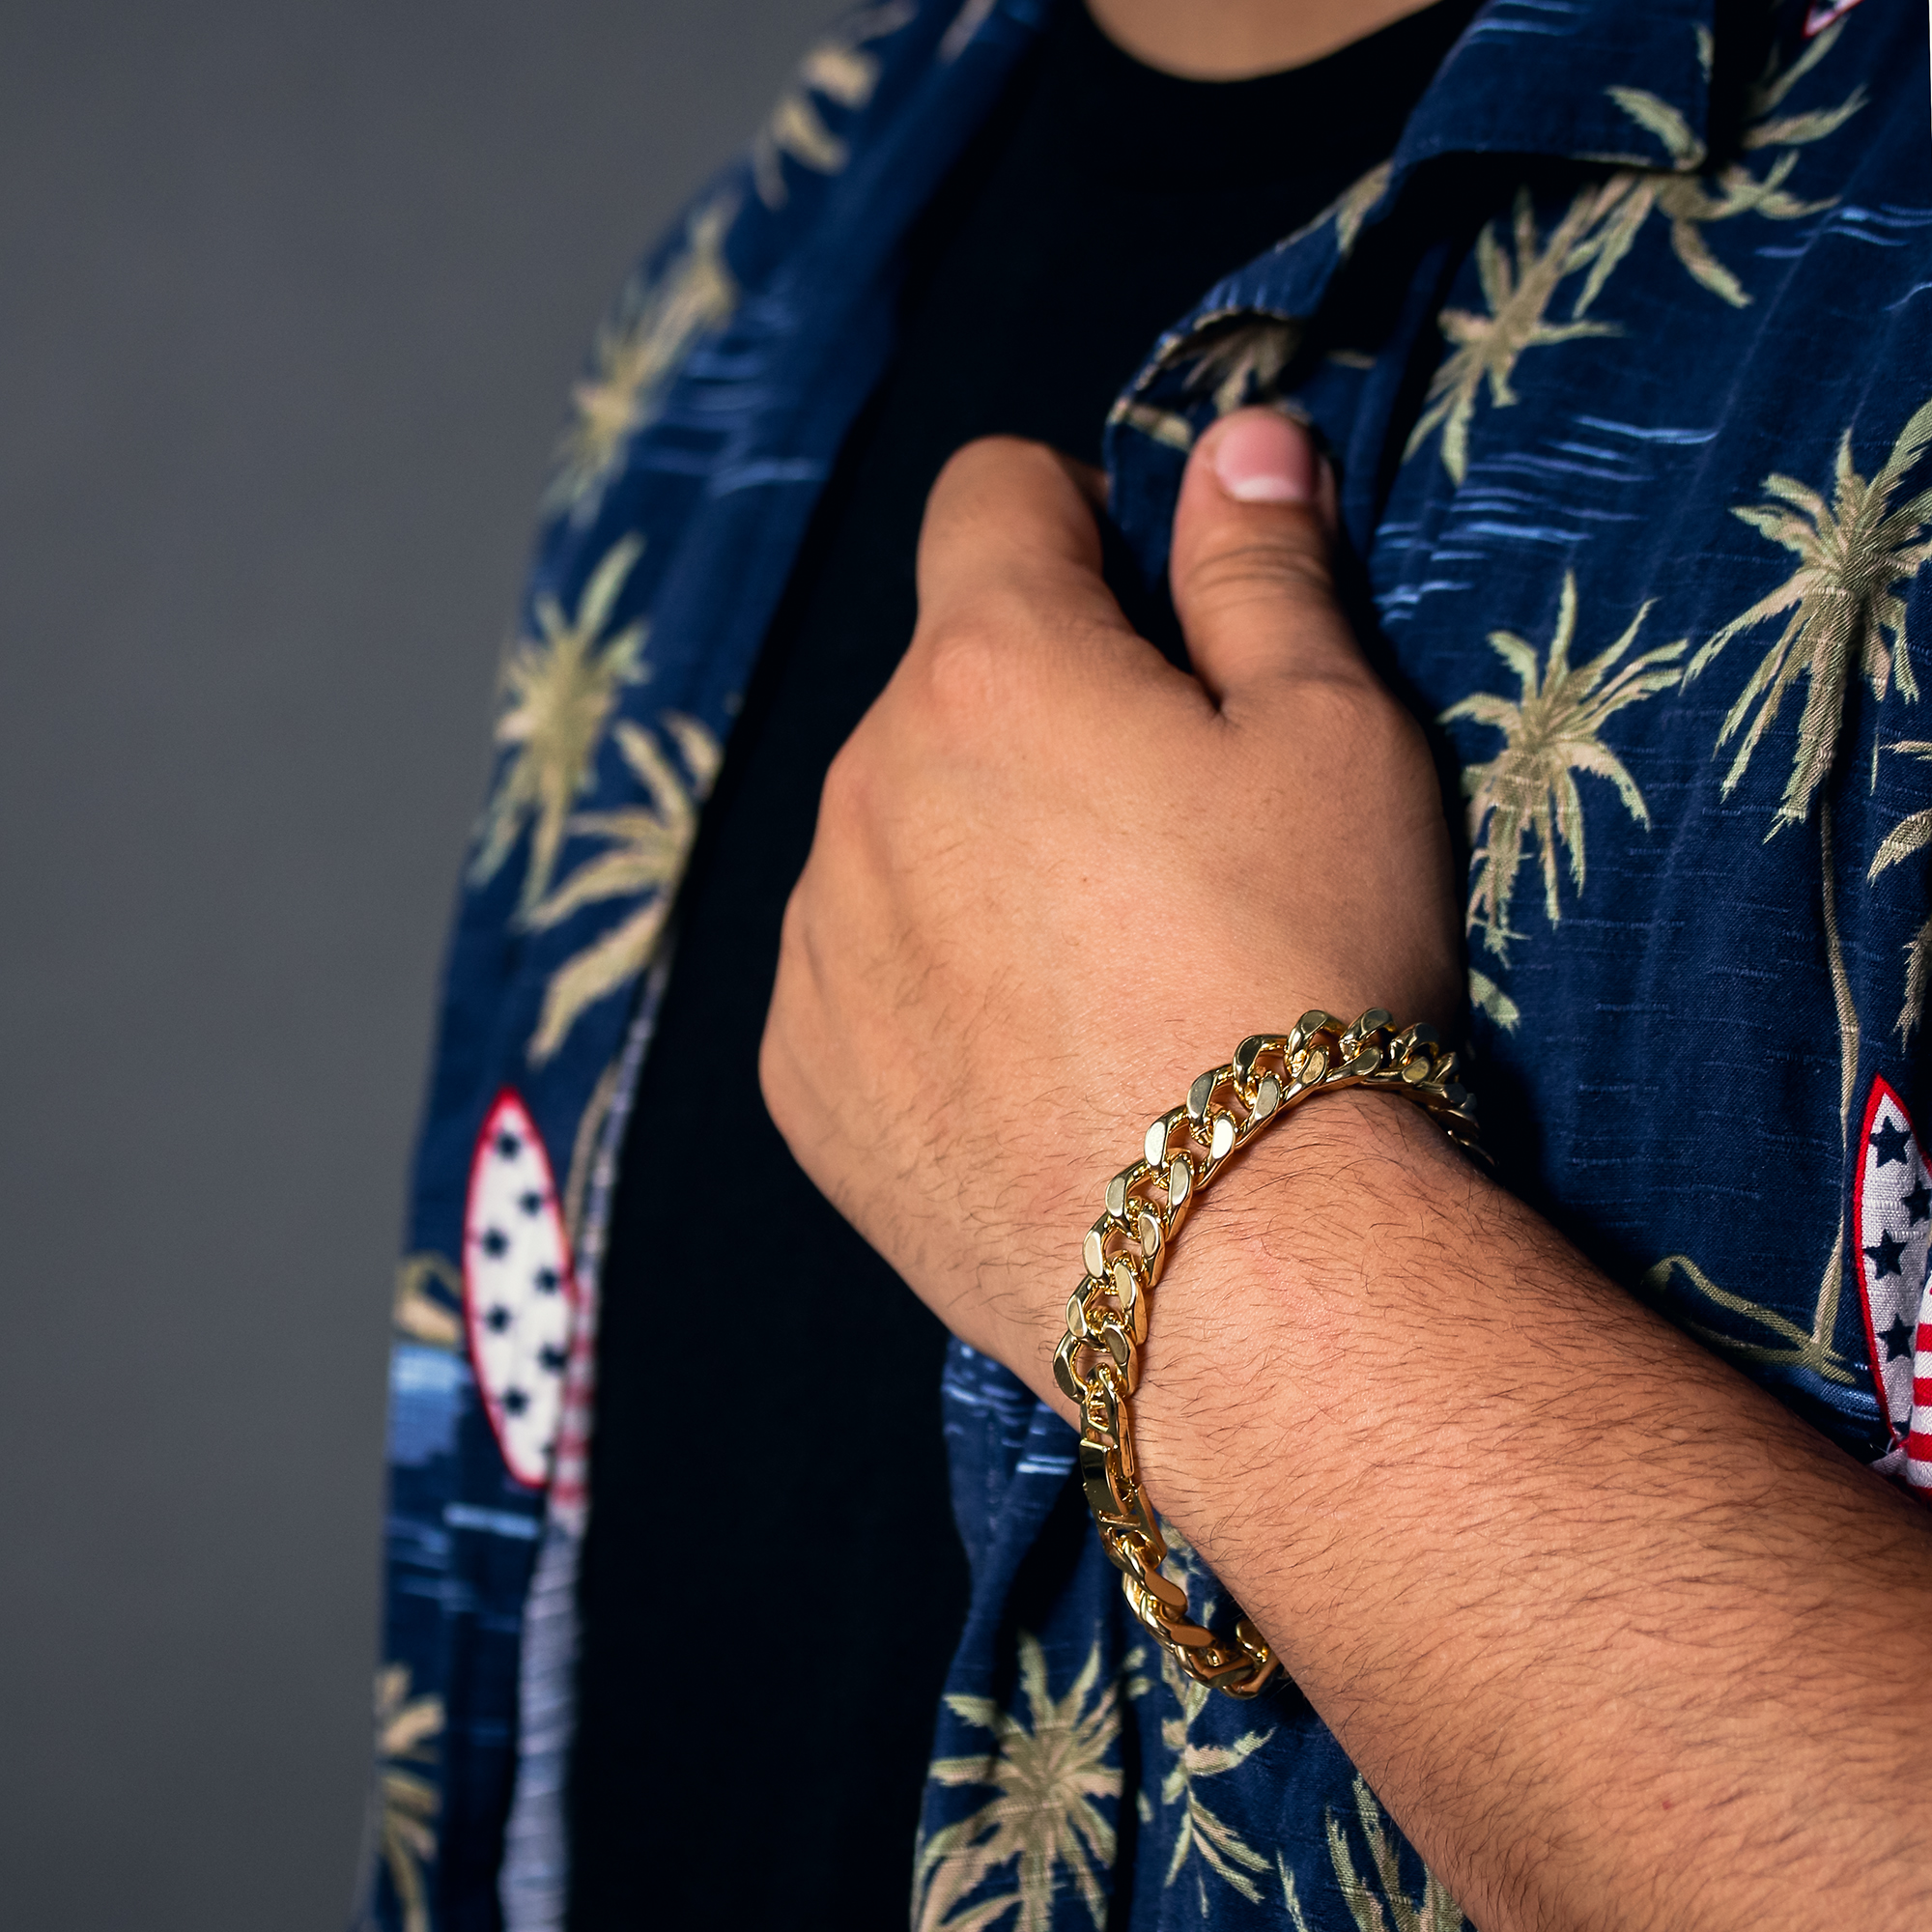 Men's Gold Plated Hip-Hop XL Cz Jesus Chapel Cuban Chain 10mm 30 & Bracelet 3pc Set